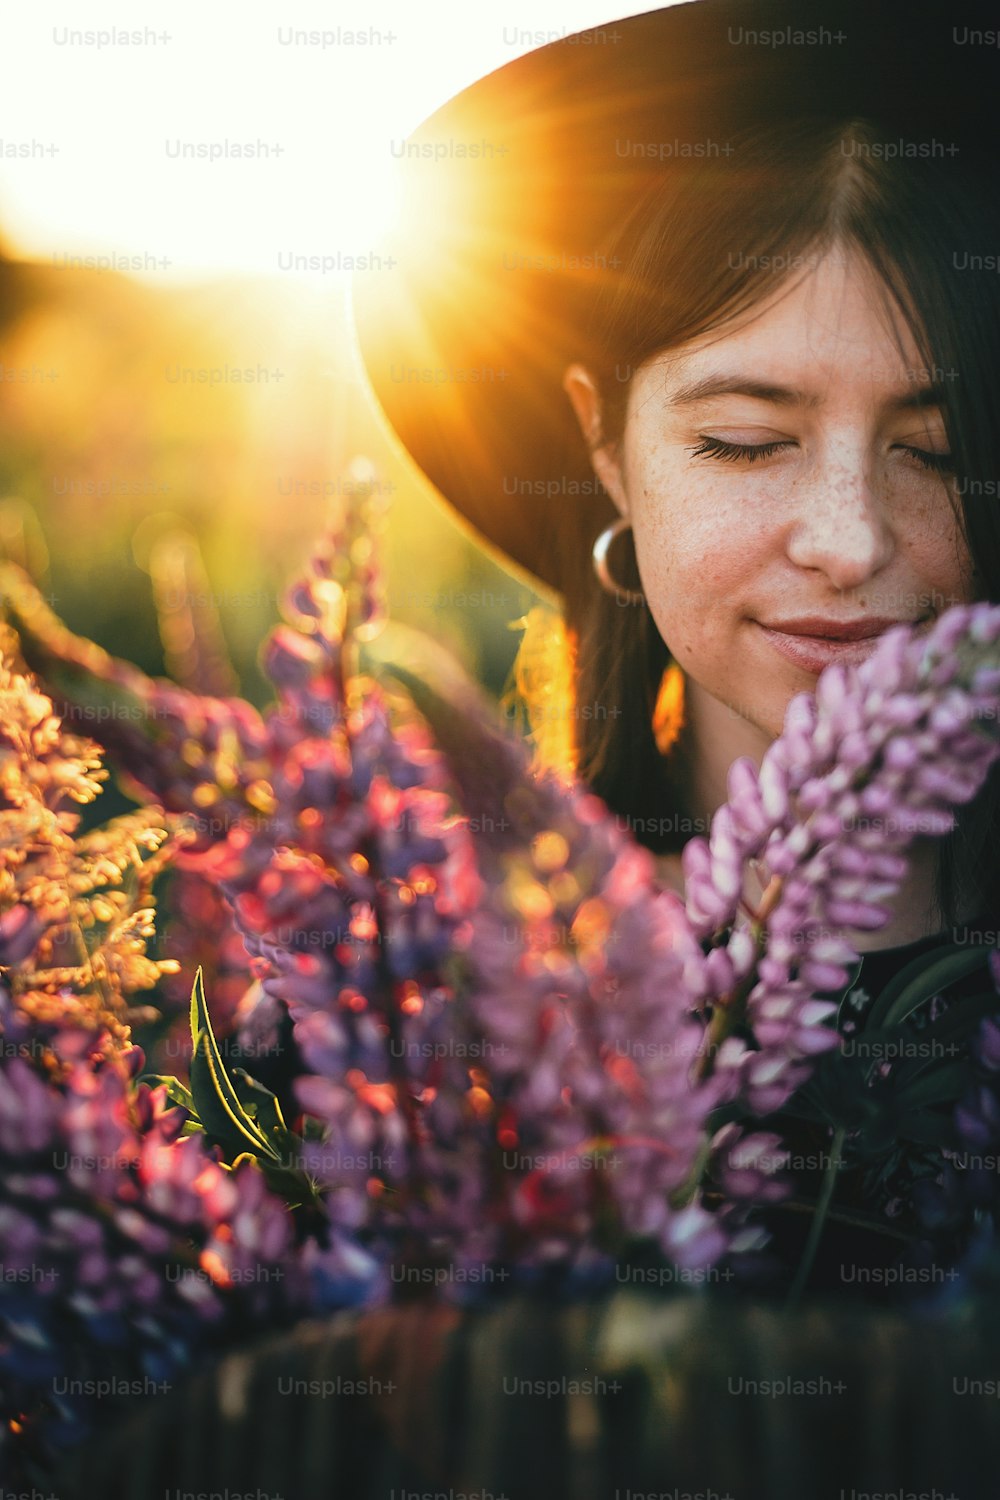 田舎の野原で夕焼けの光の中でルピナスの花束を持つ美しい女性の肖像画。静寂に包まれたひととき。夏の牧草地で暖かい日差しの中でルピナスの花を咲かせる若い女性